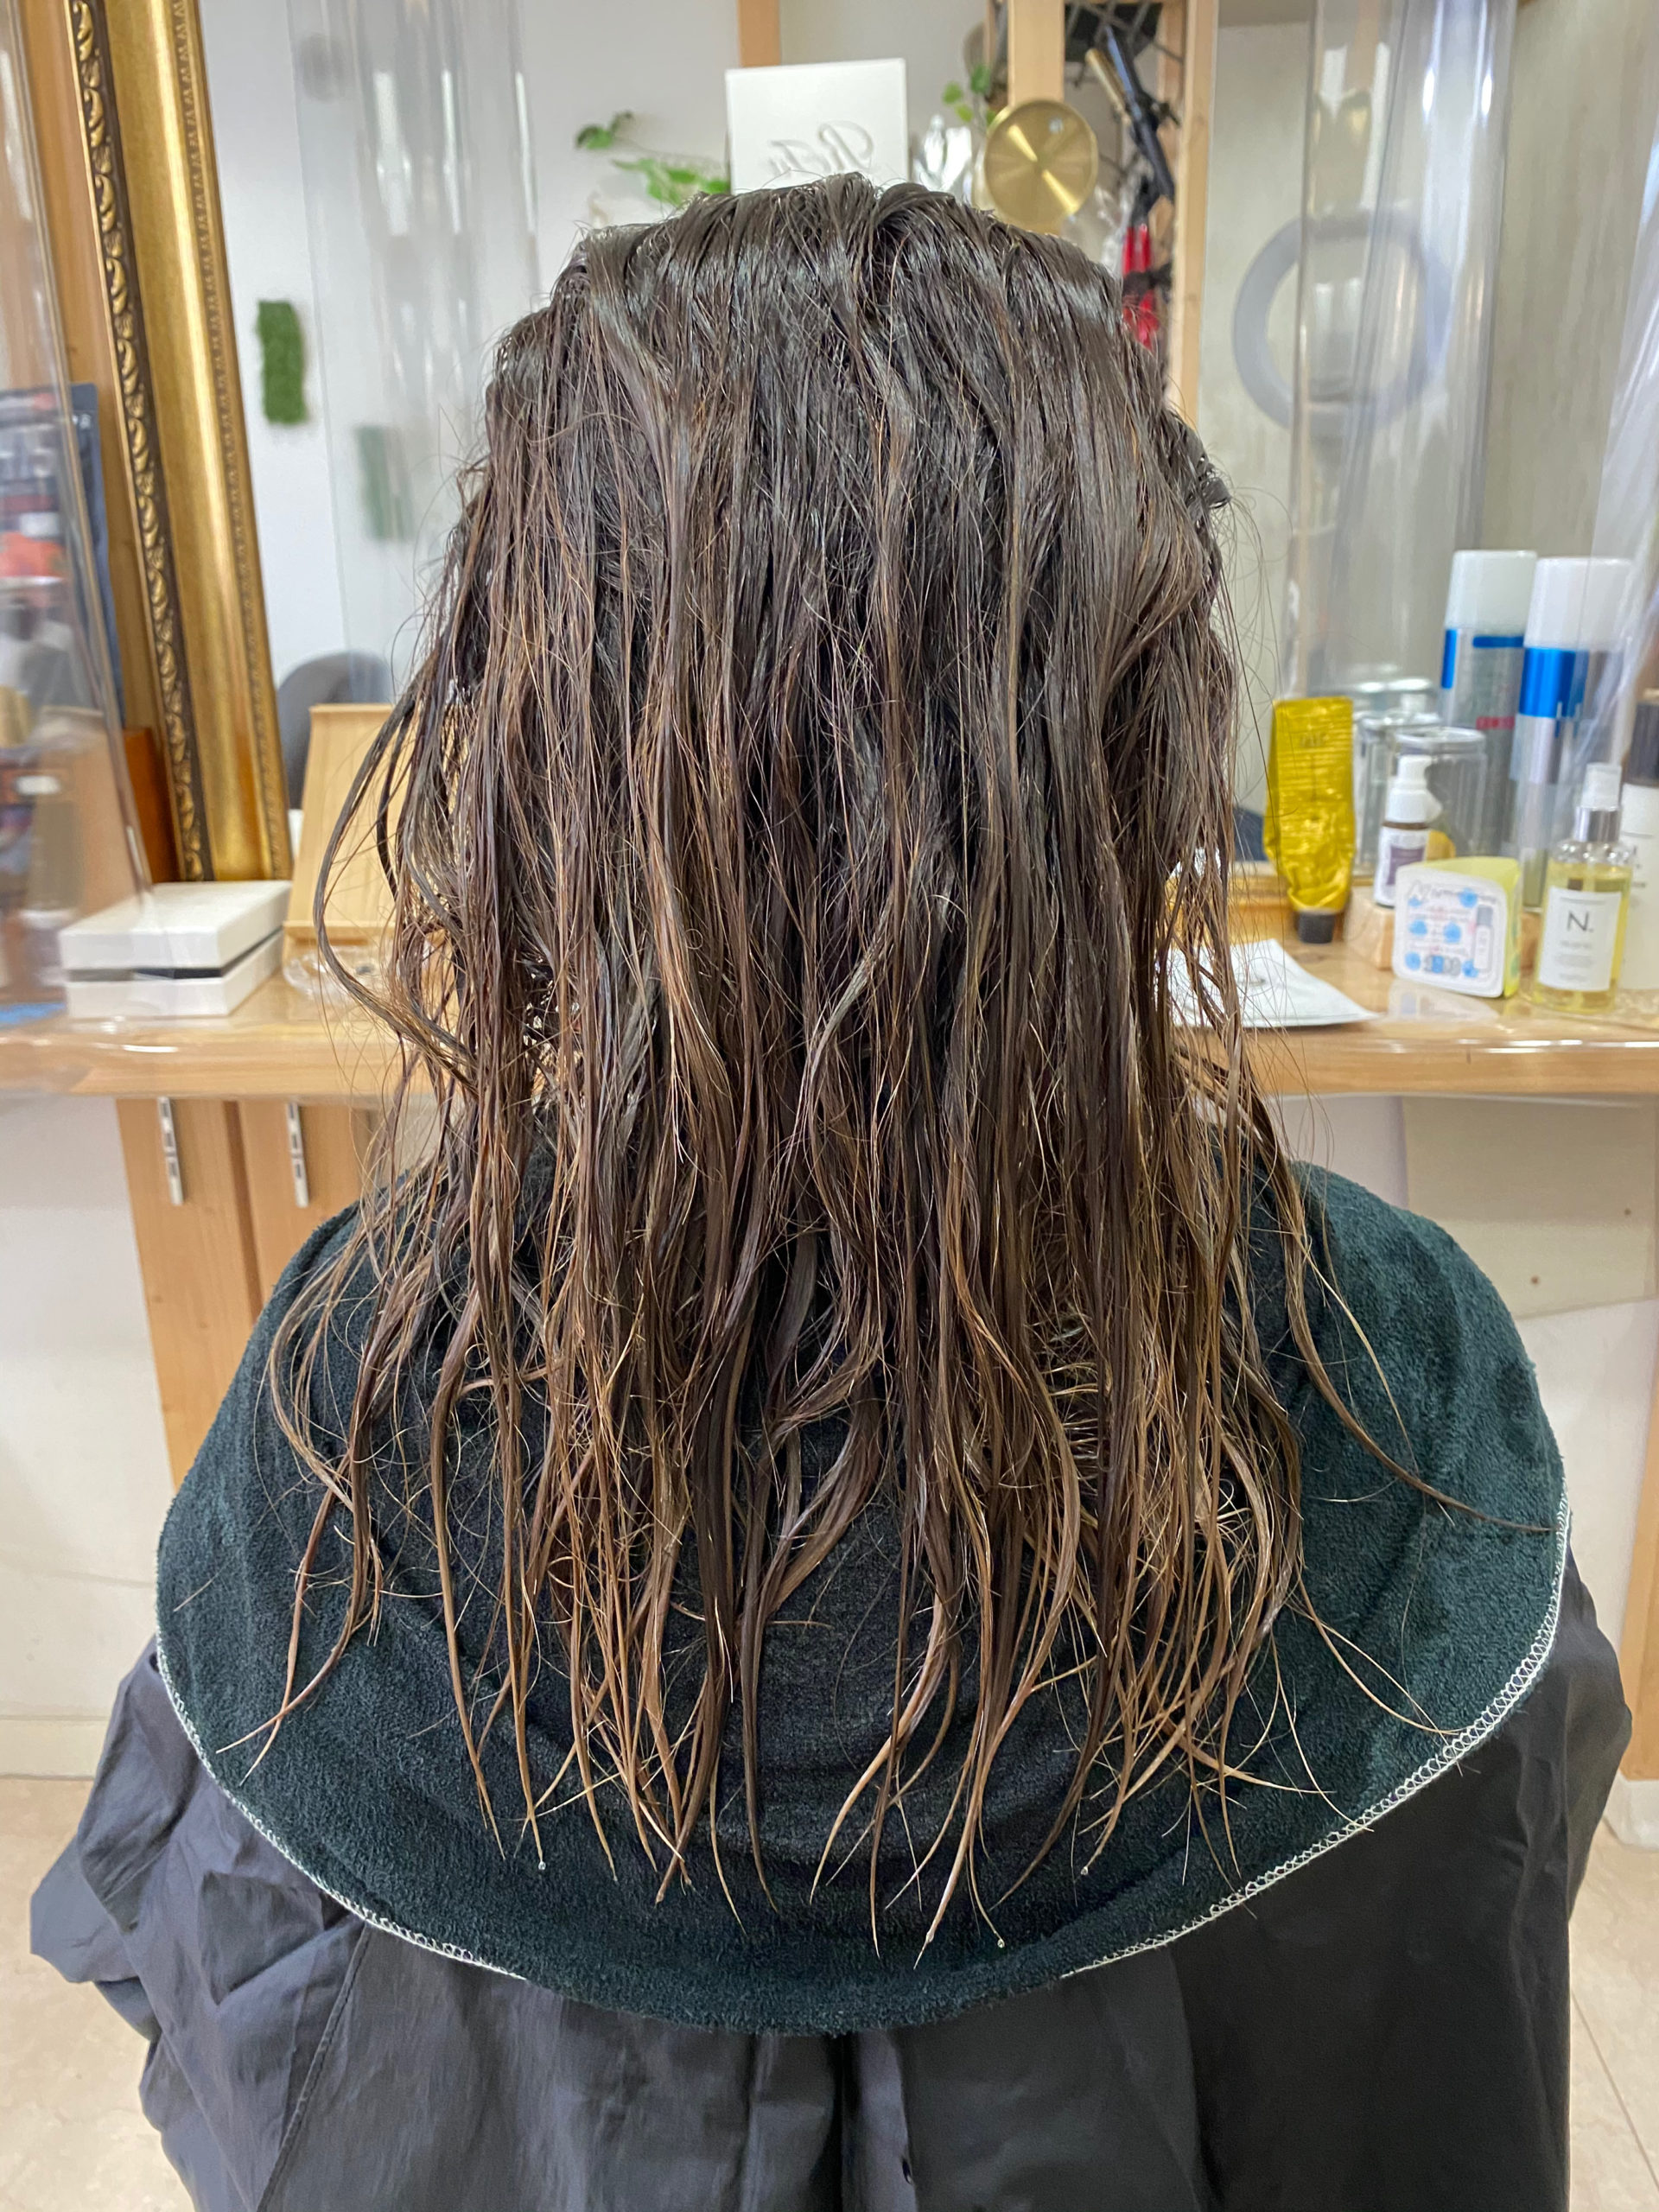 ブリーチ毛で広がり、パサつきが気になる髪の縮毛矯正。原宿・表参道『髪のお悩みを解決するヘアケア美容師の挑戦』